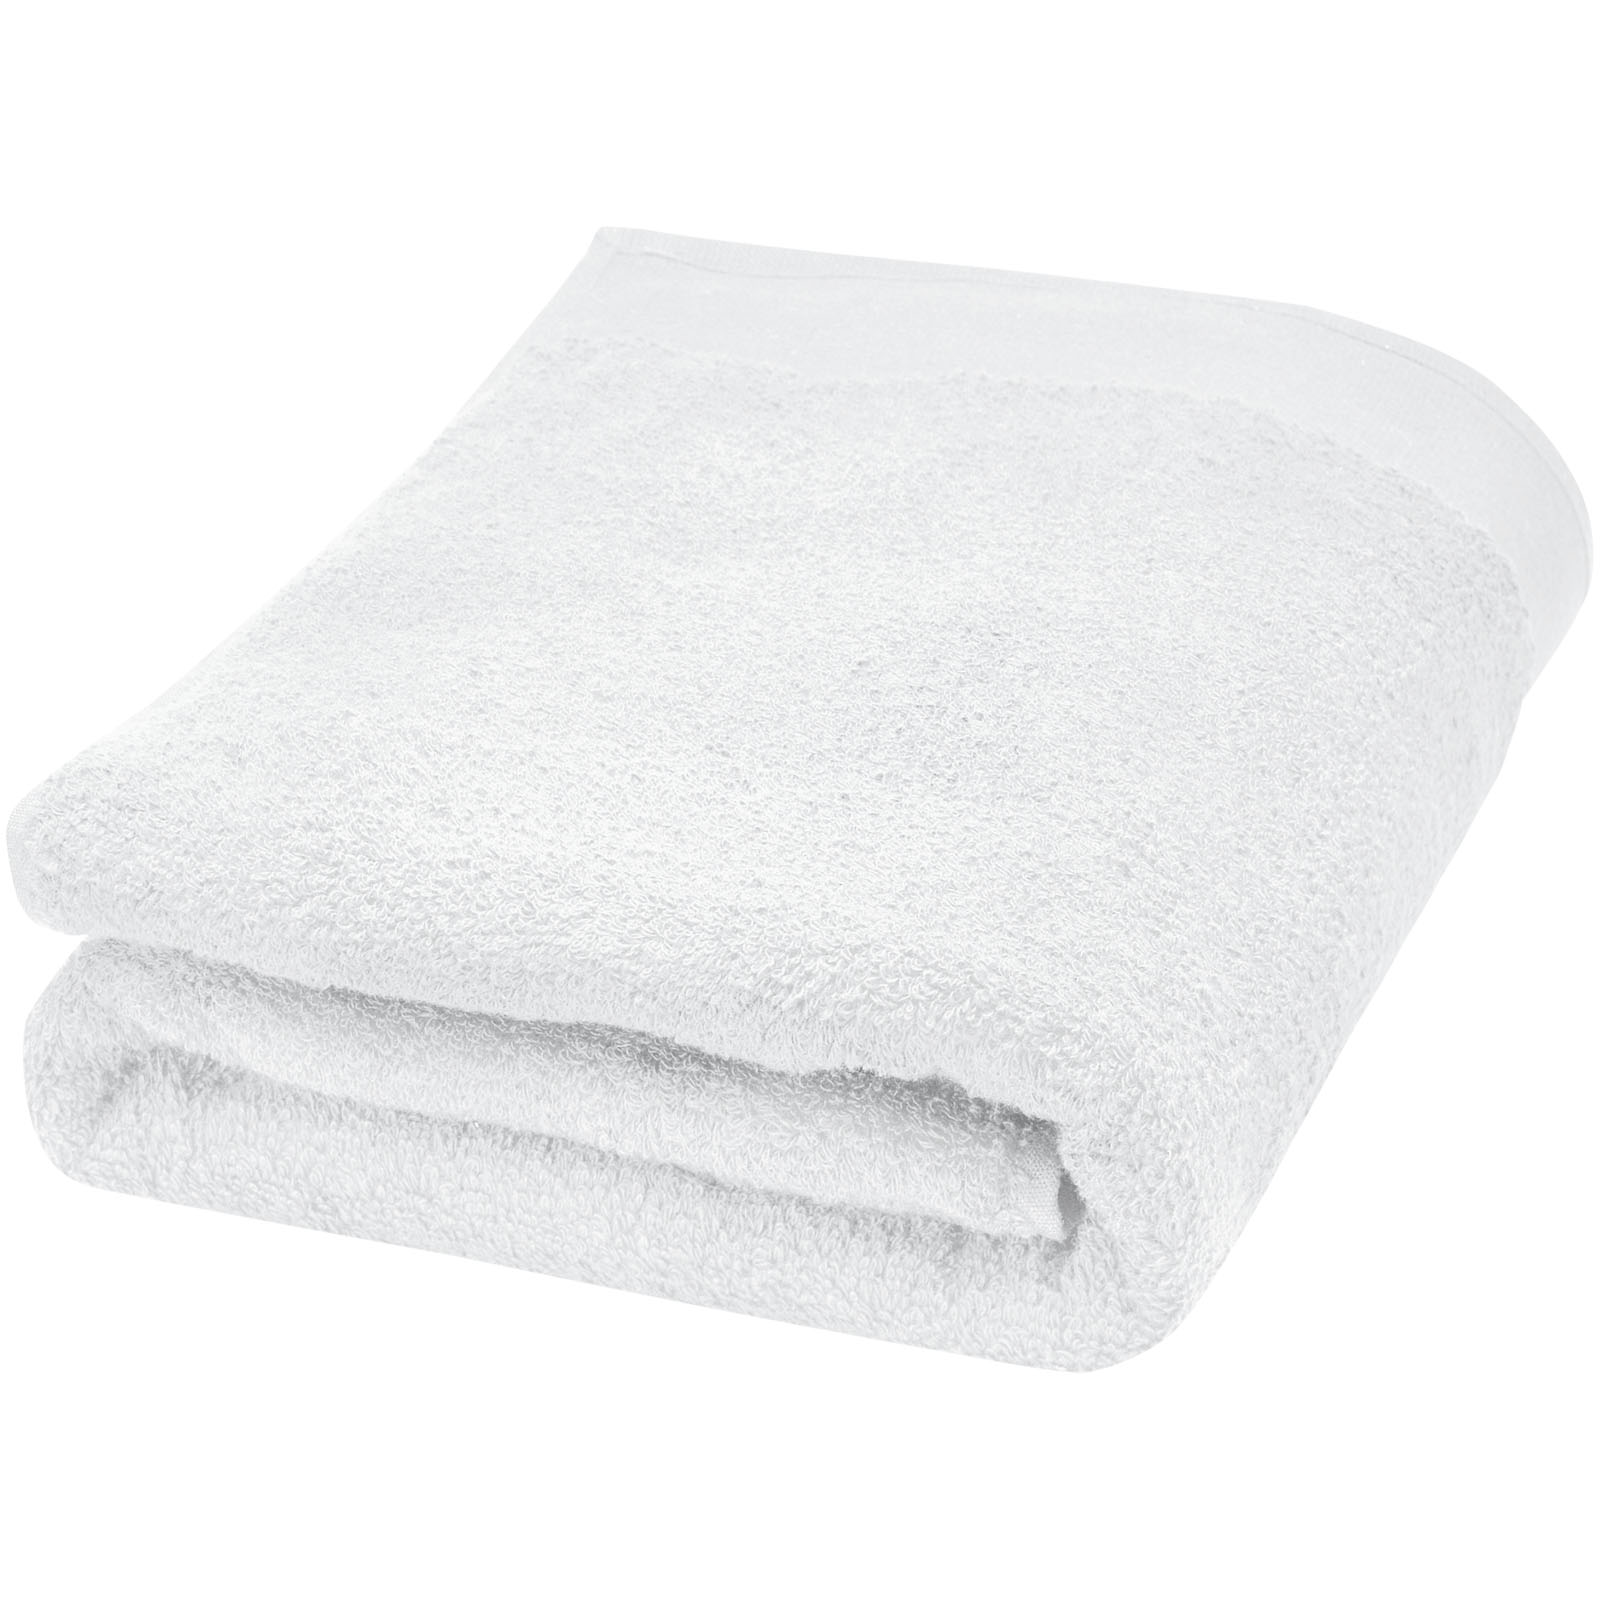 Advertising Towels - Ellie 550 g/m² cotton towel 70x140 cm